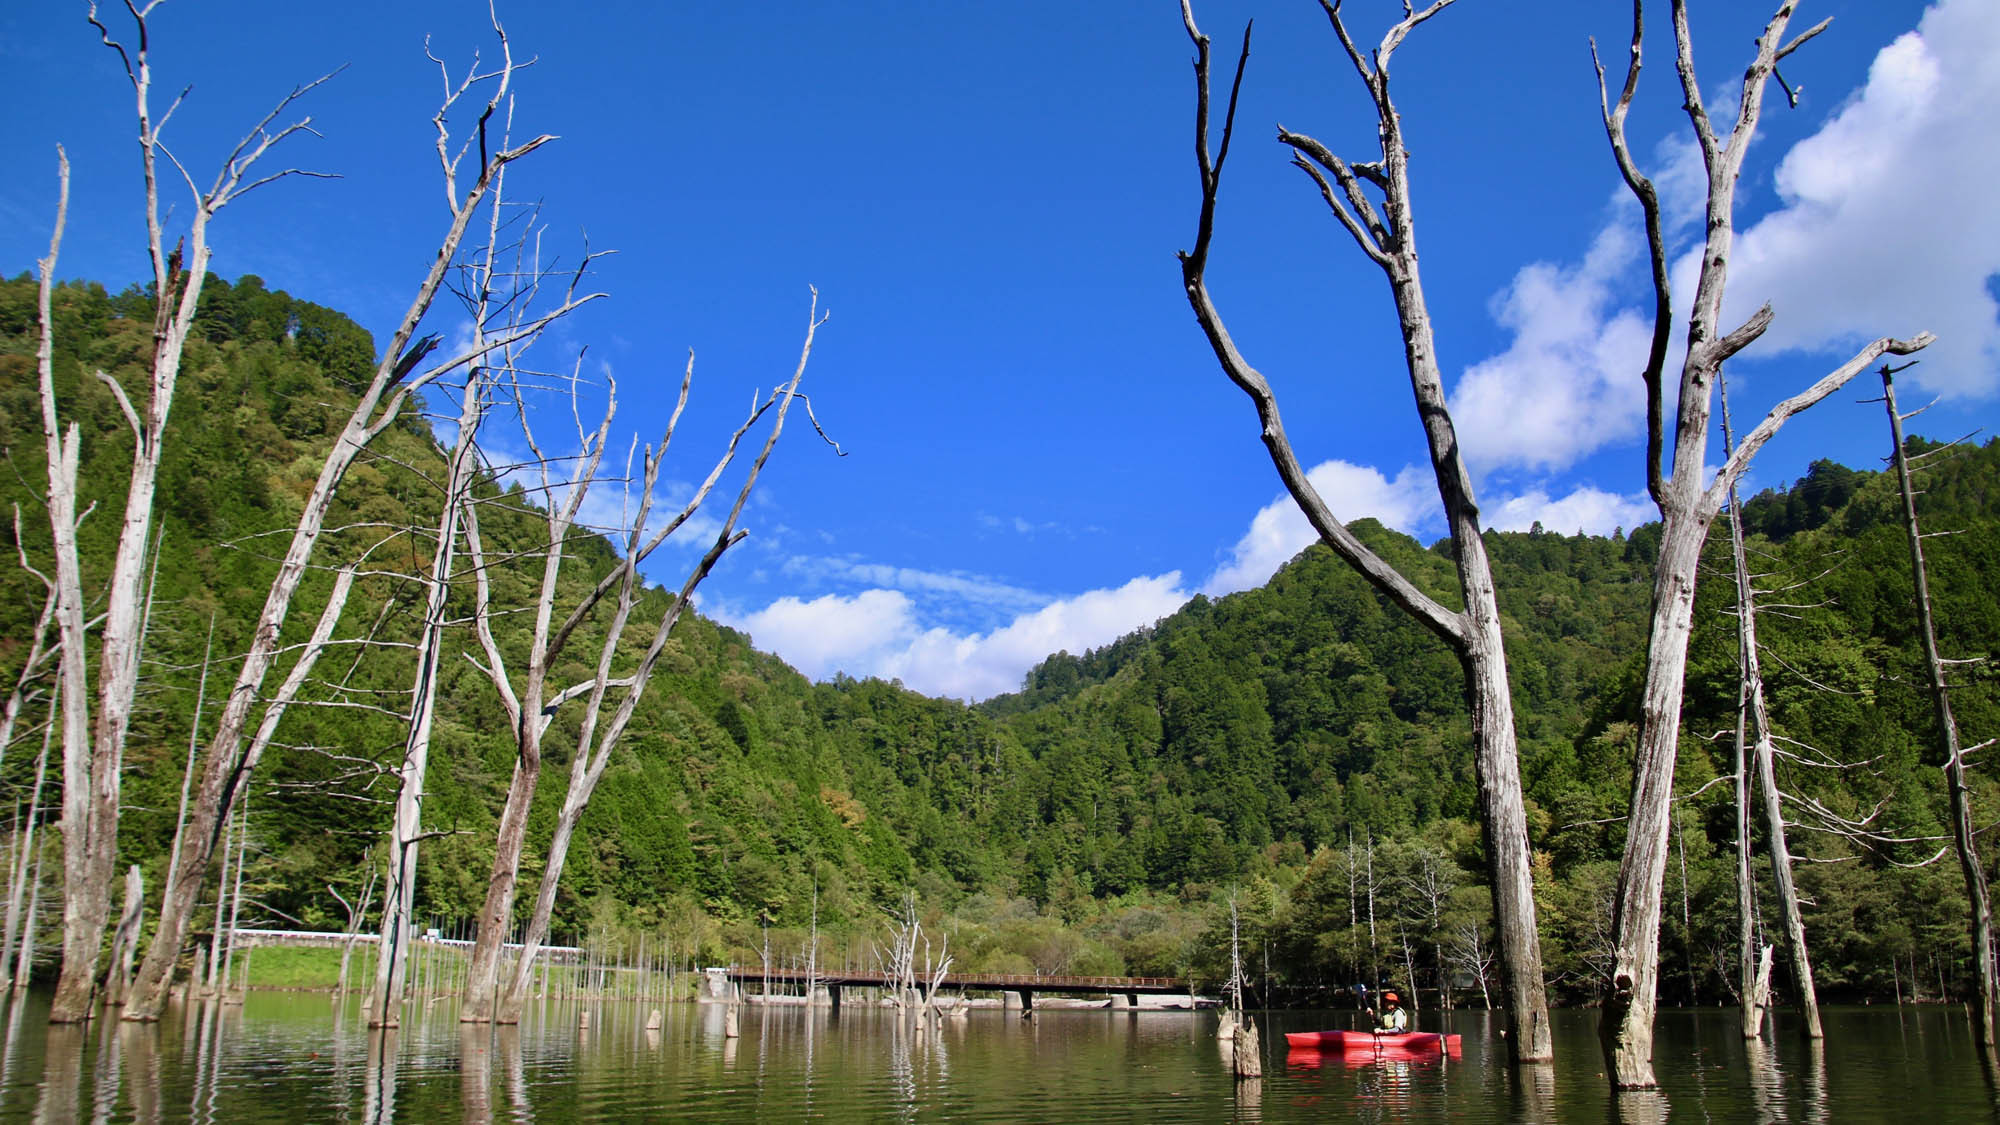 自然湖ネイチャーカヌーツアー深い森に囲まれ、ゆるやかな時間、水のゆらぎを感じる森林浴カヌーツアー